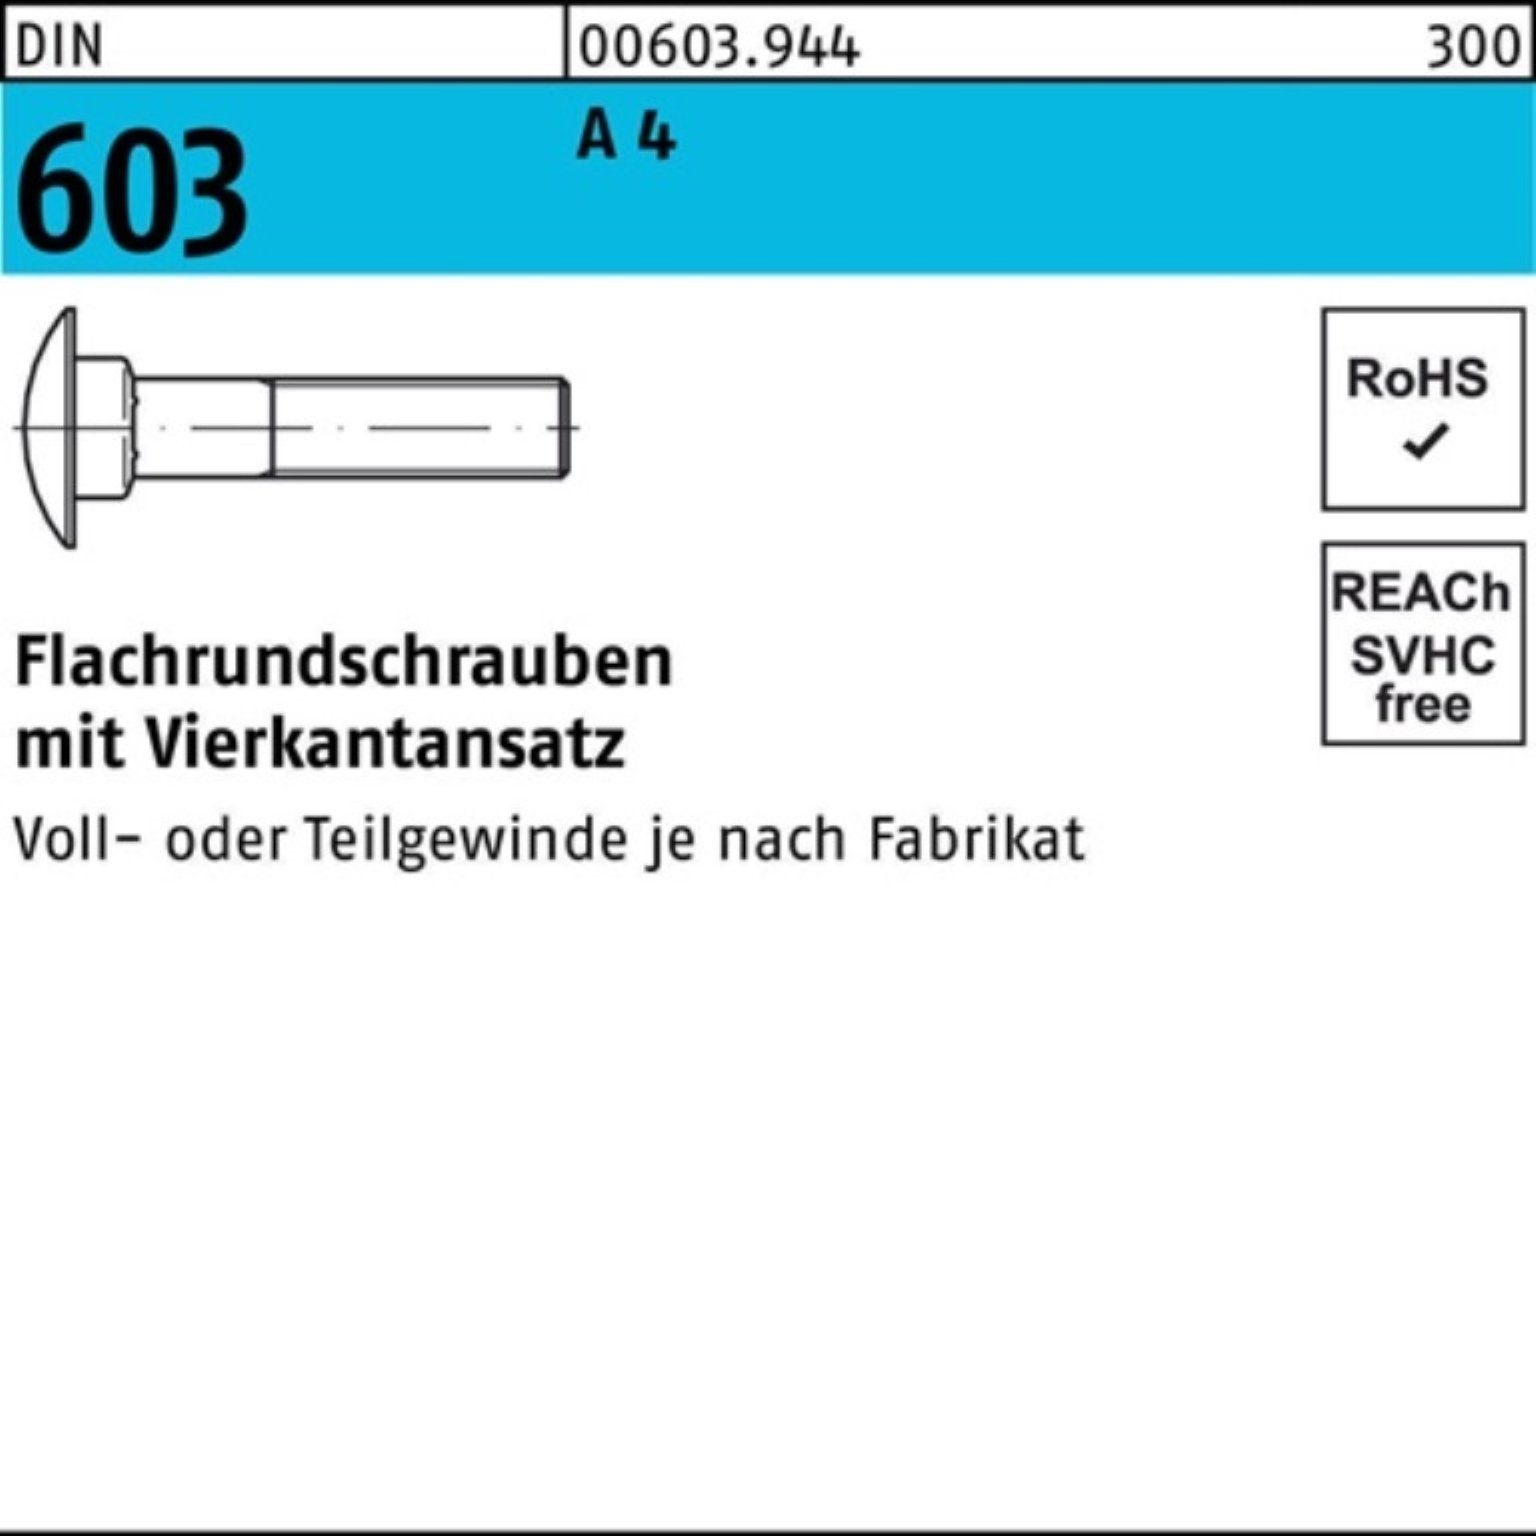 Reyher Schraube 100er Pack Flachrundschraube DIN 603 Vierkantansatz M16x 60 A 4 1 Stü | Schrauben